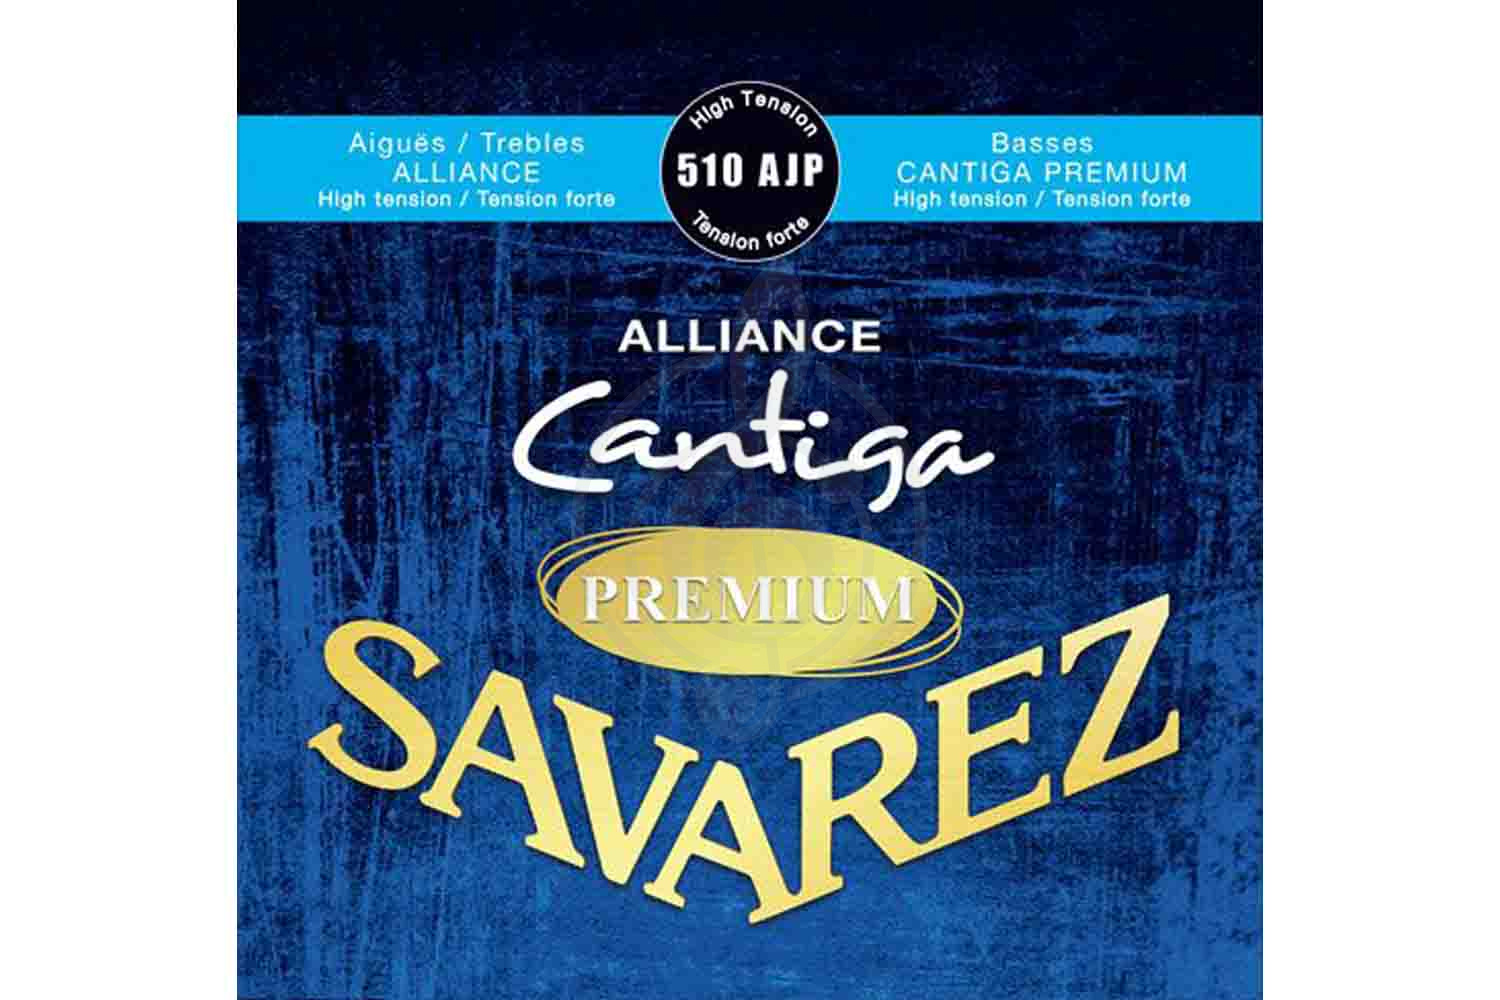 Струны для классической гитары Струны для классических гитар Savarez Savarez 510AJP  Alliance Cantiga Blue Premium high tension - Струны для классической гитары 510AJP - фото 1